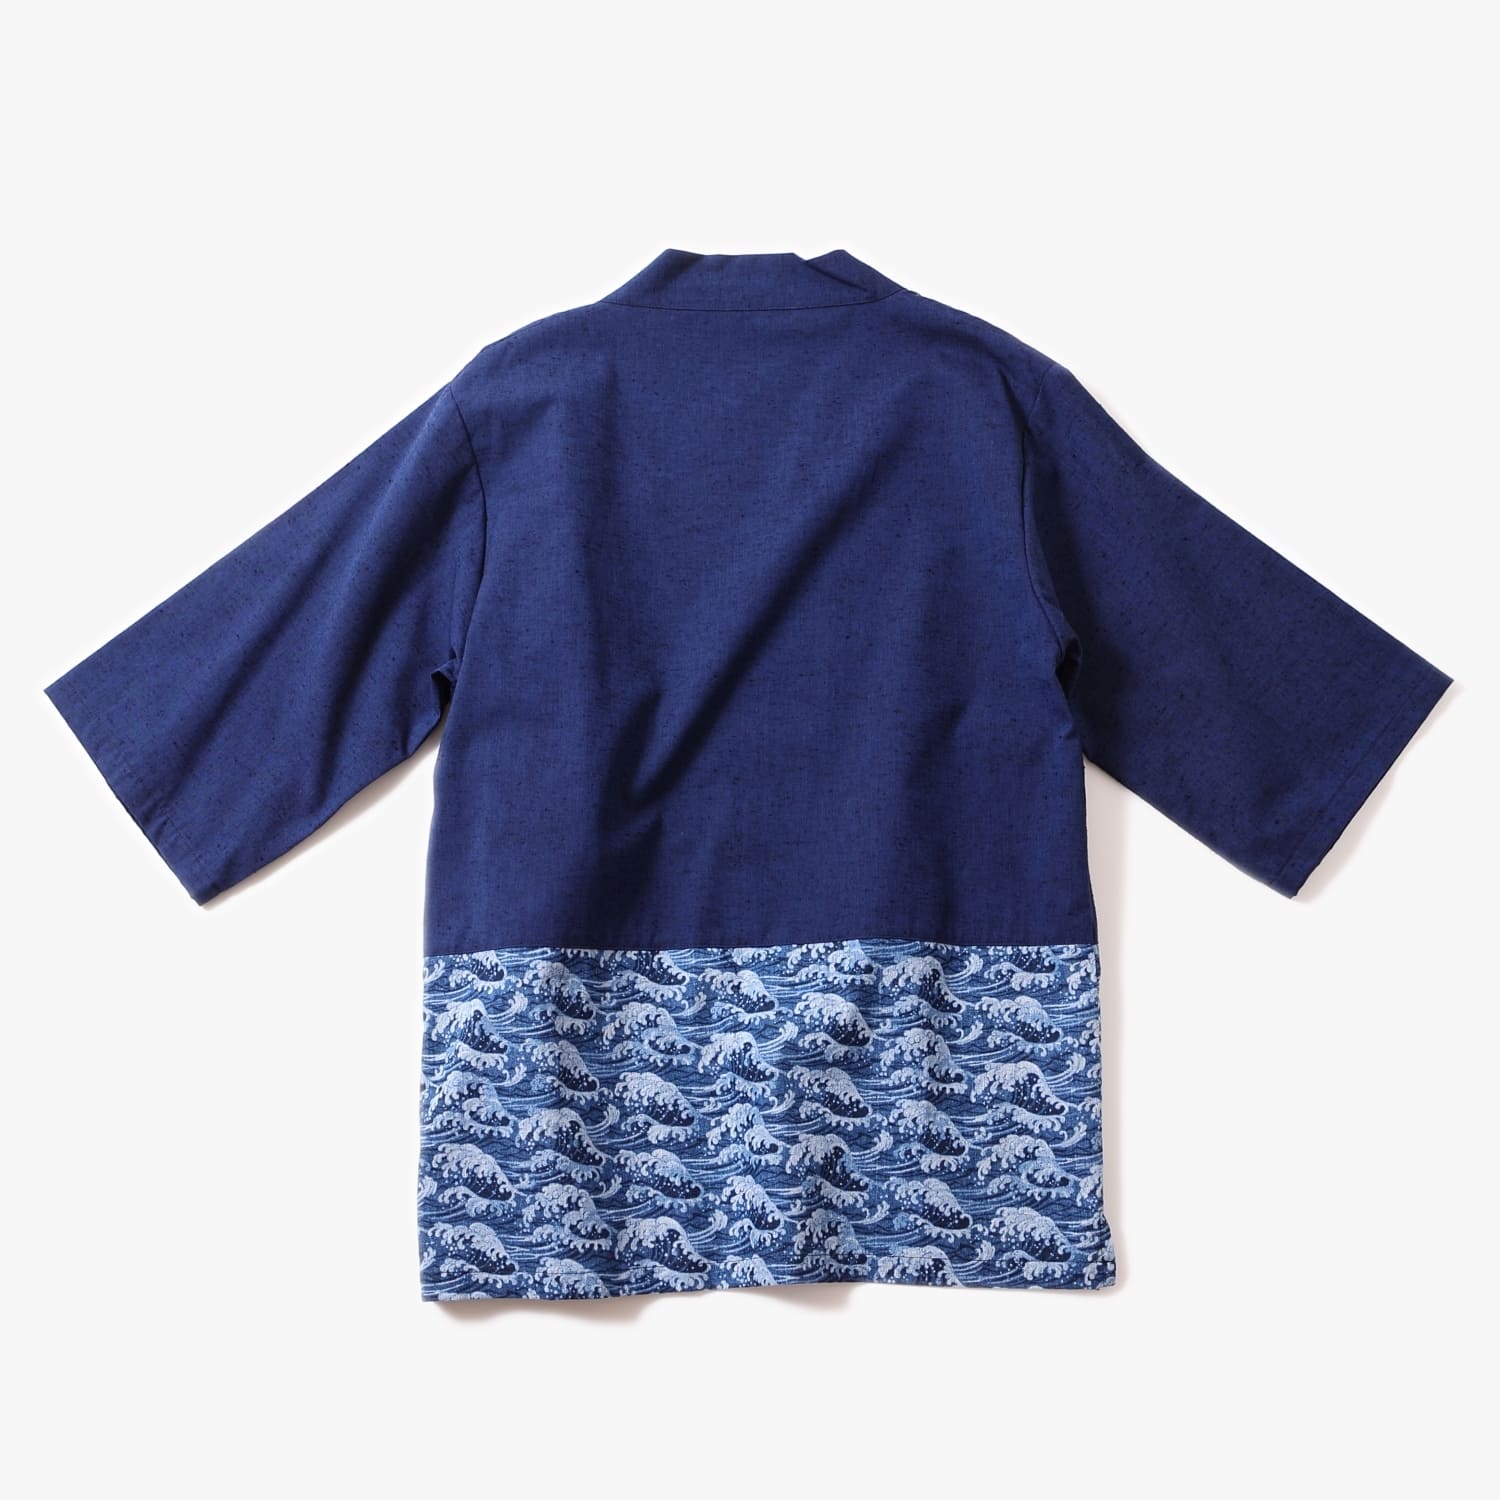 Haori Jacket (Nami Waves) - Kimono Style